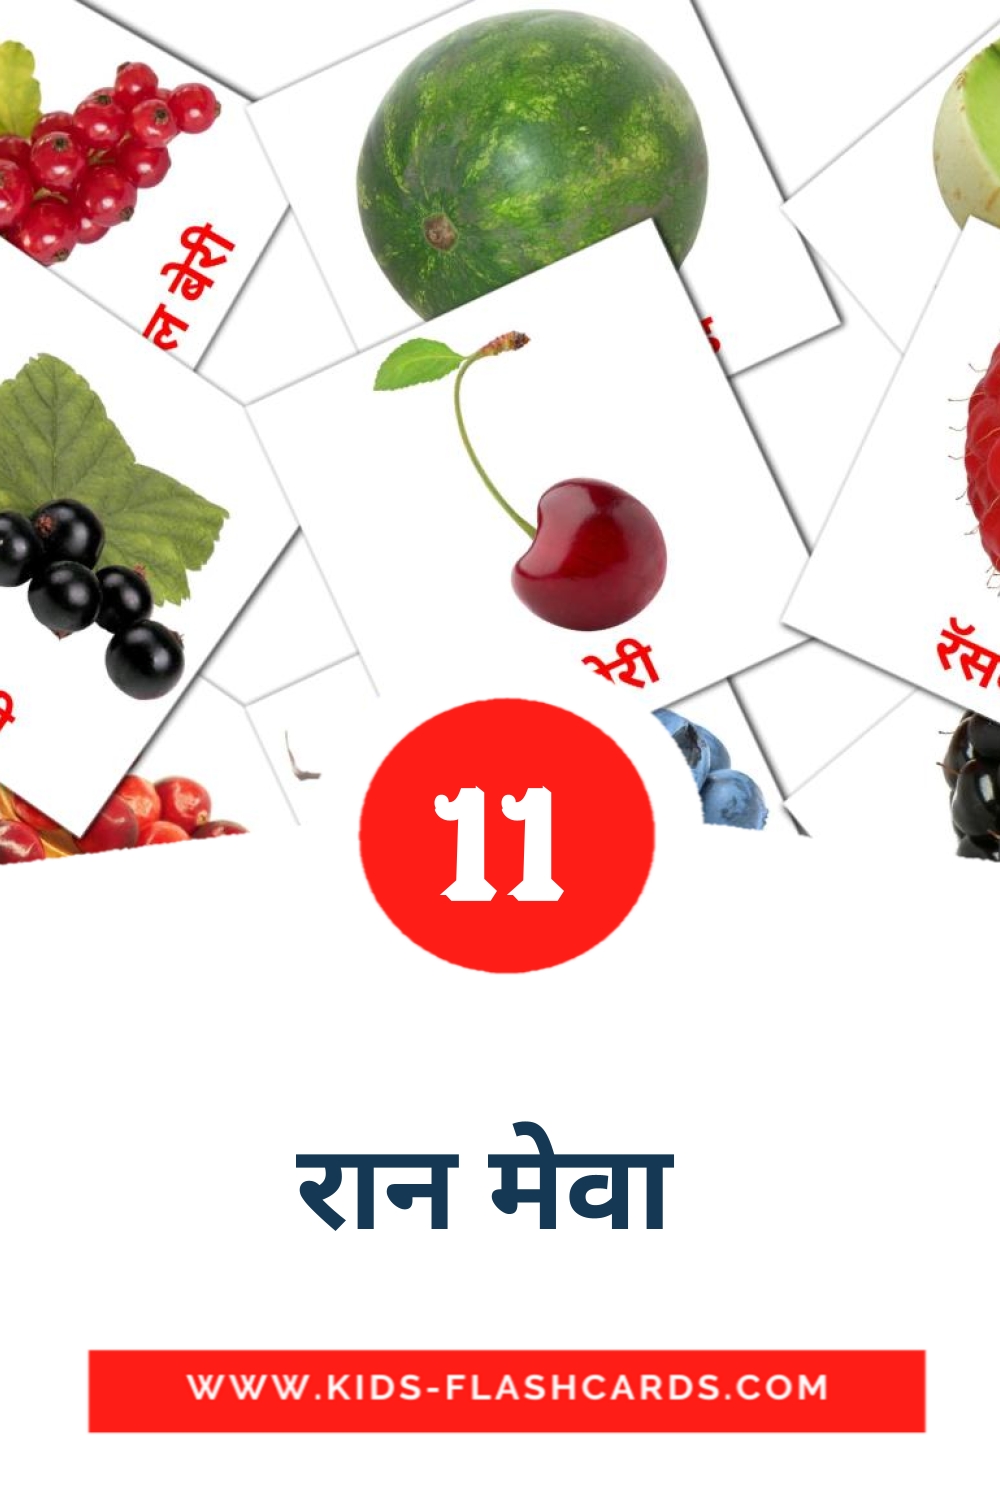 11 tarjetas didacticas de रान मेवा  para el jardín de infancia en marathi